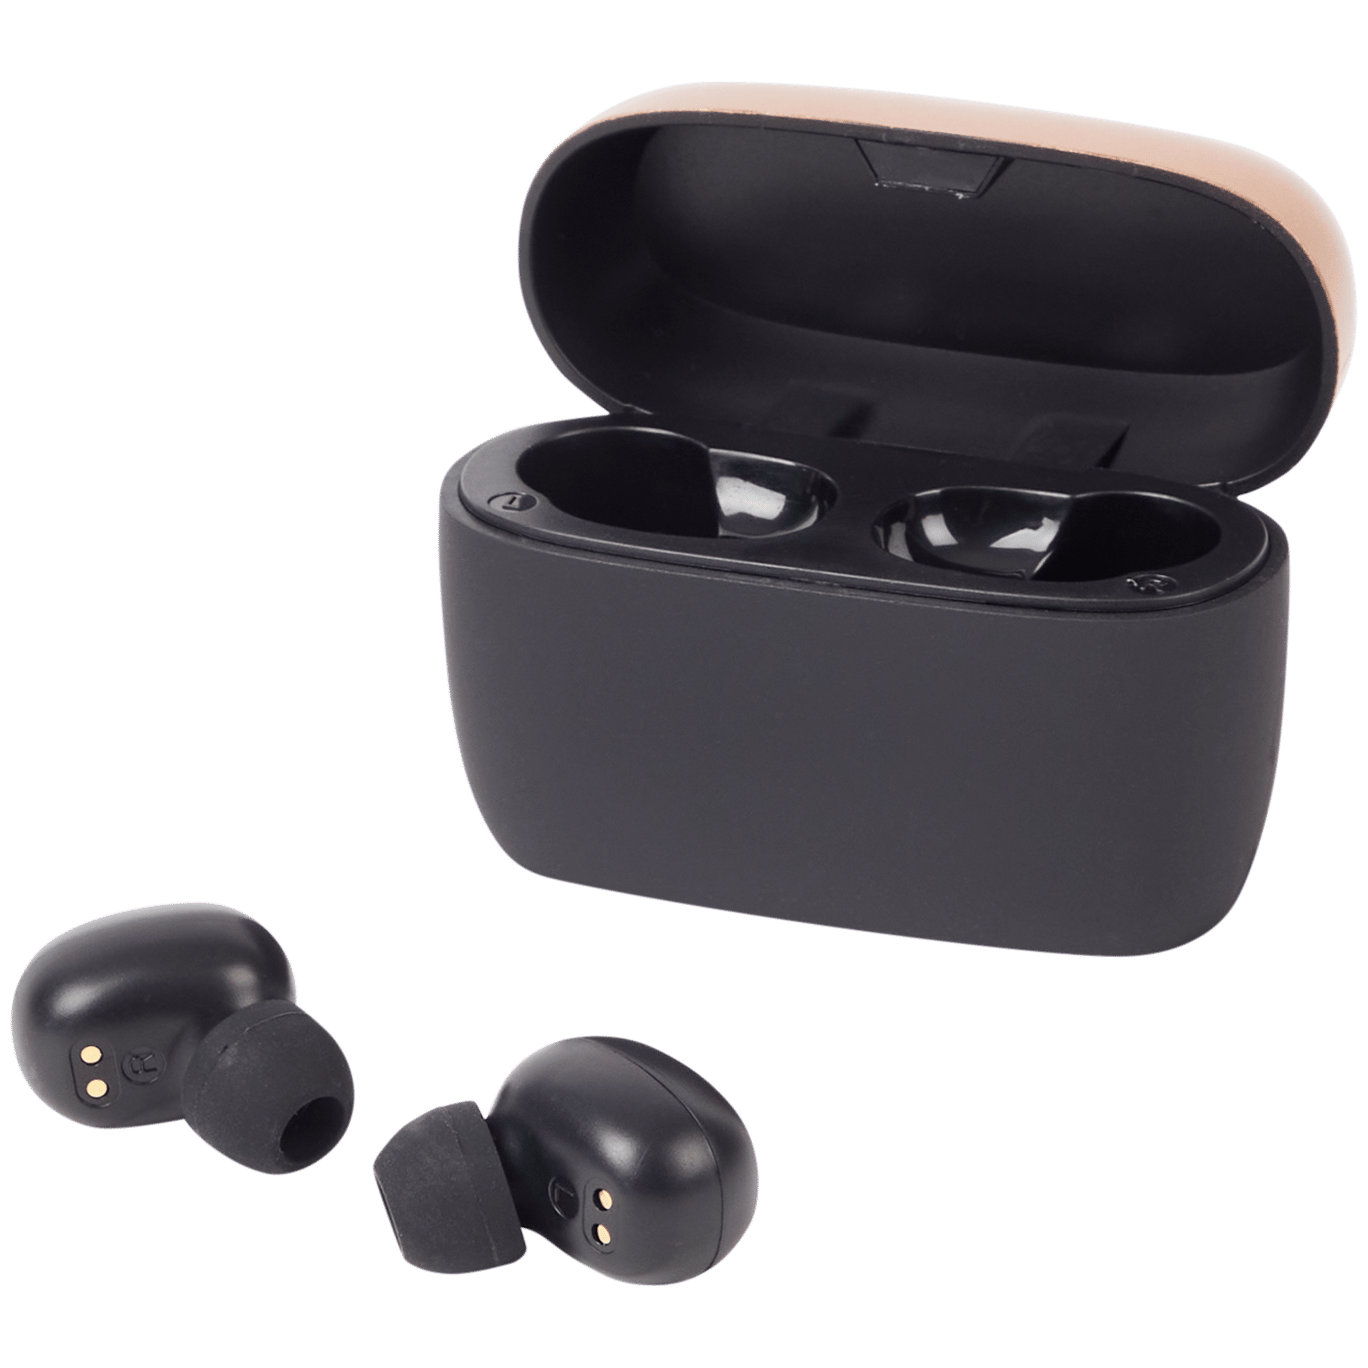 Cuffie wireless in-ear Solix